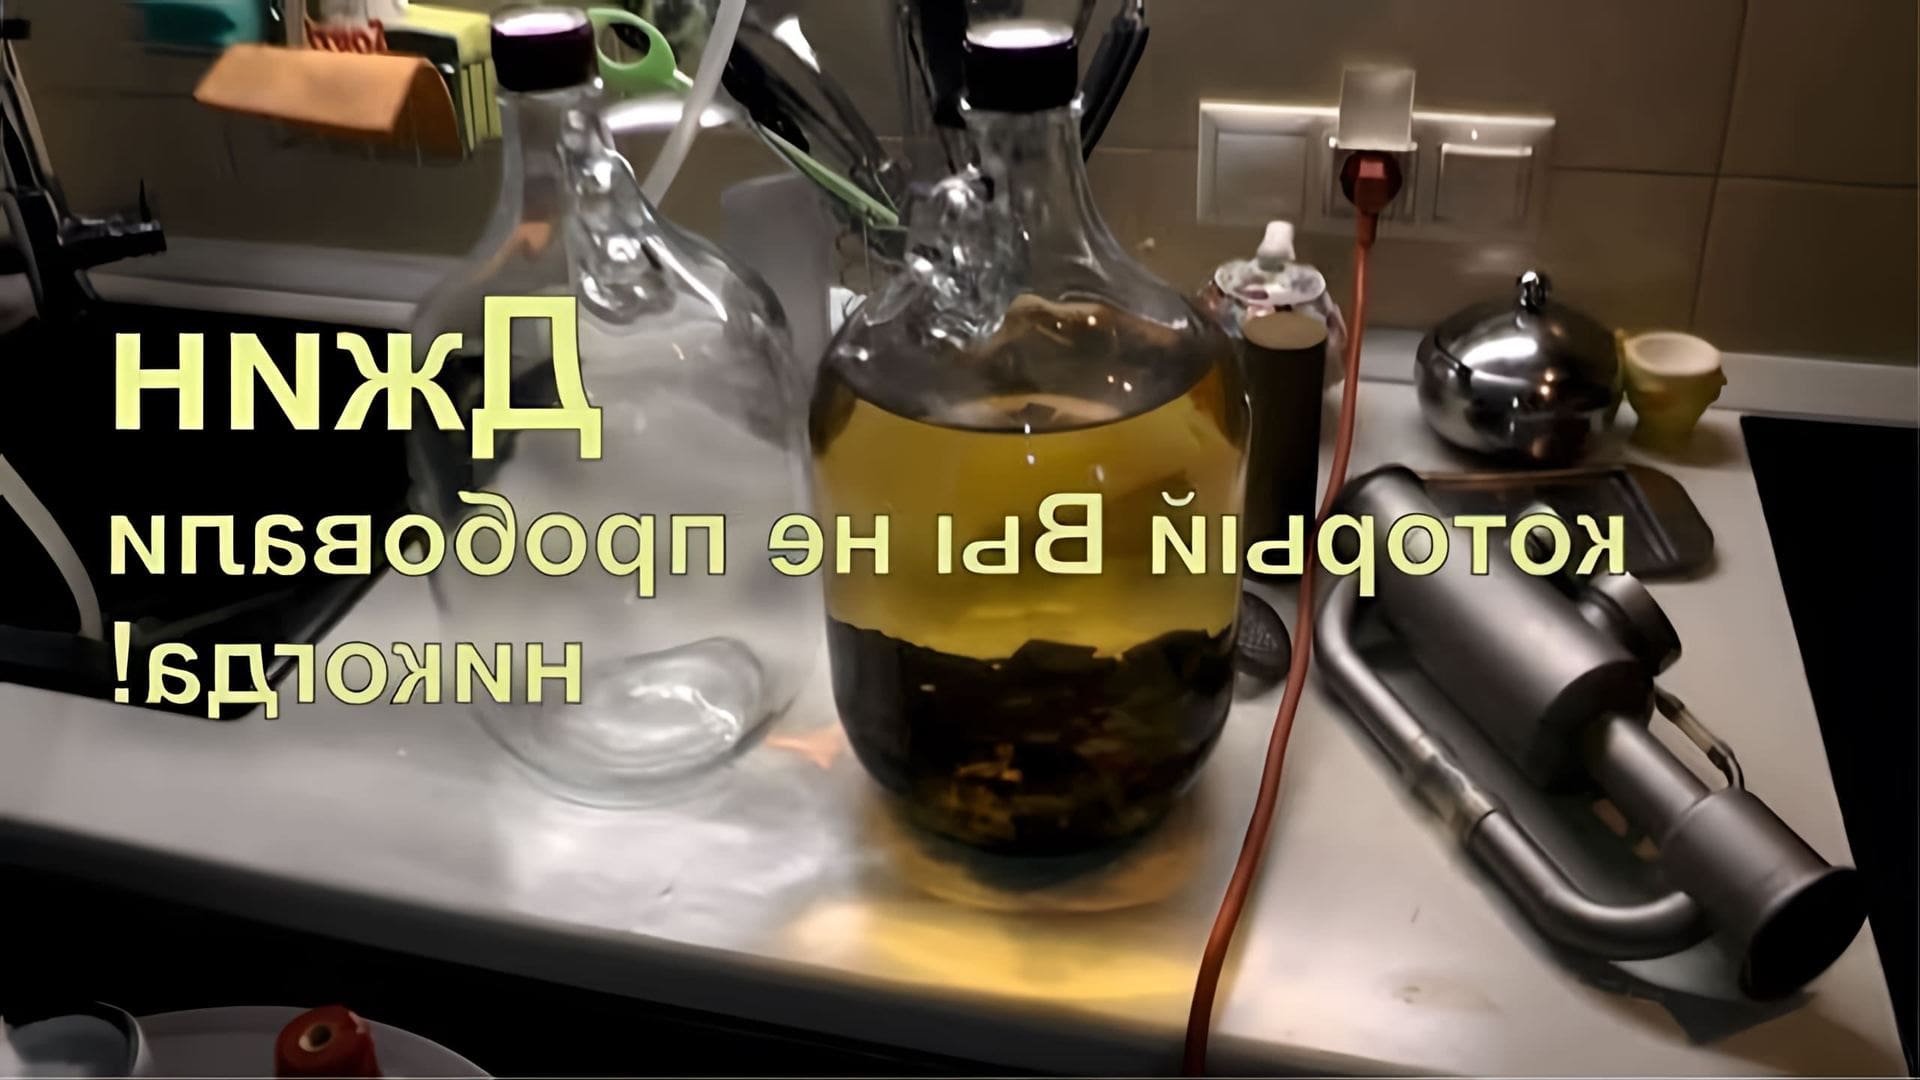 В данном видео демонстрируется процесс приготовления джина с использованием бочки из-под виски